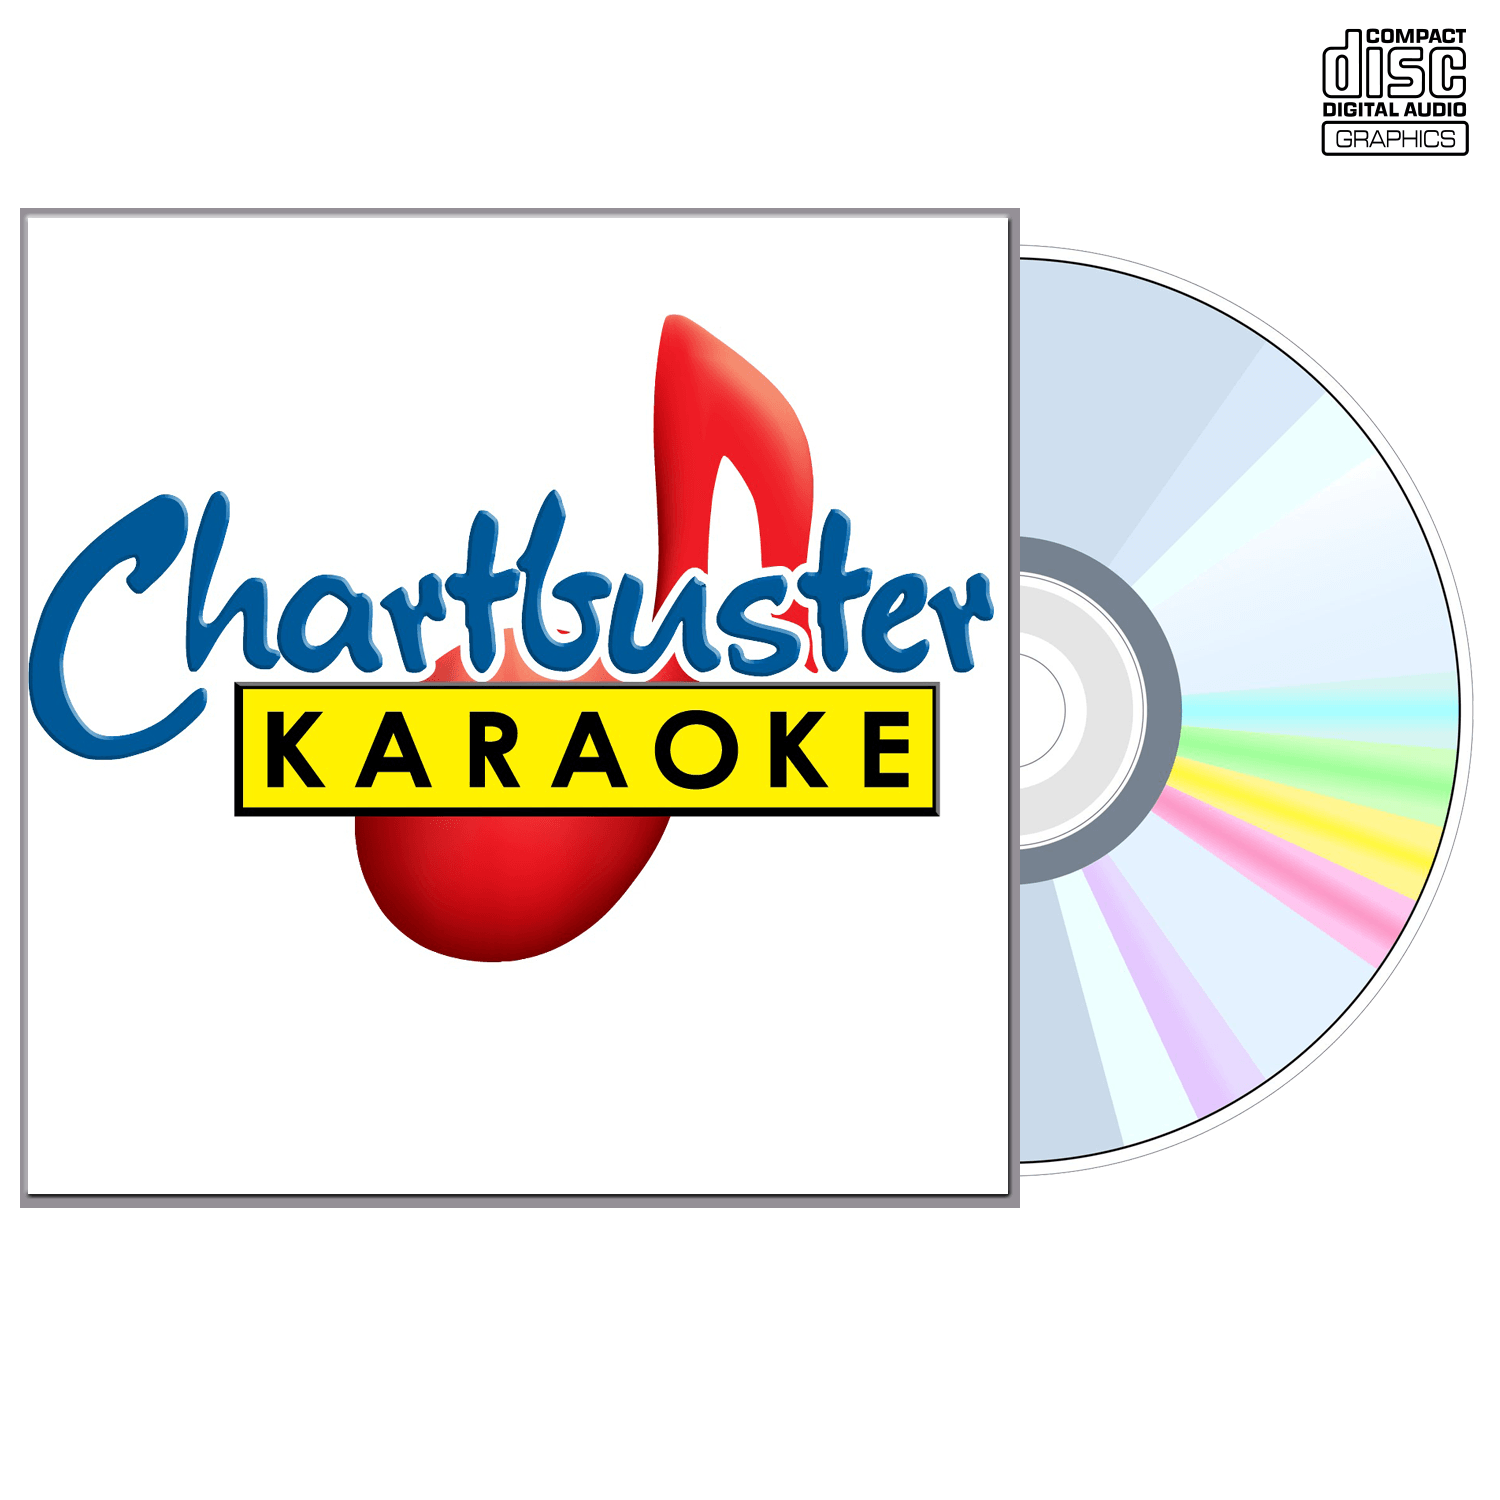 Michael Bolton - CD+G - Chartbuster Karaoke - Karaoke Home Entertainment